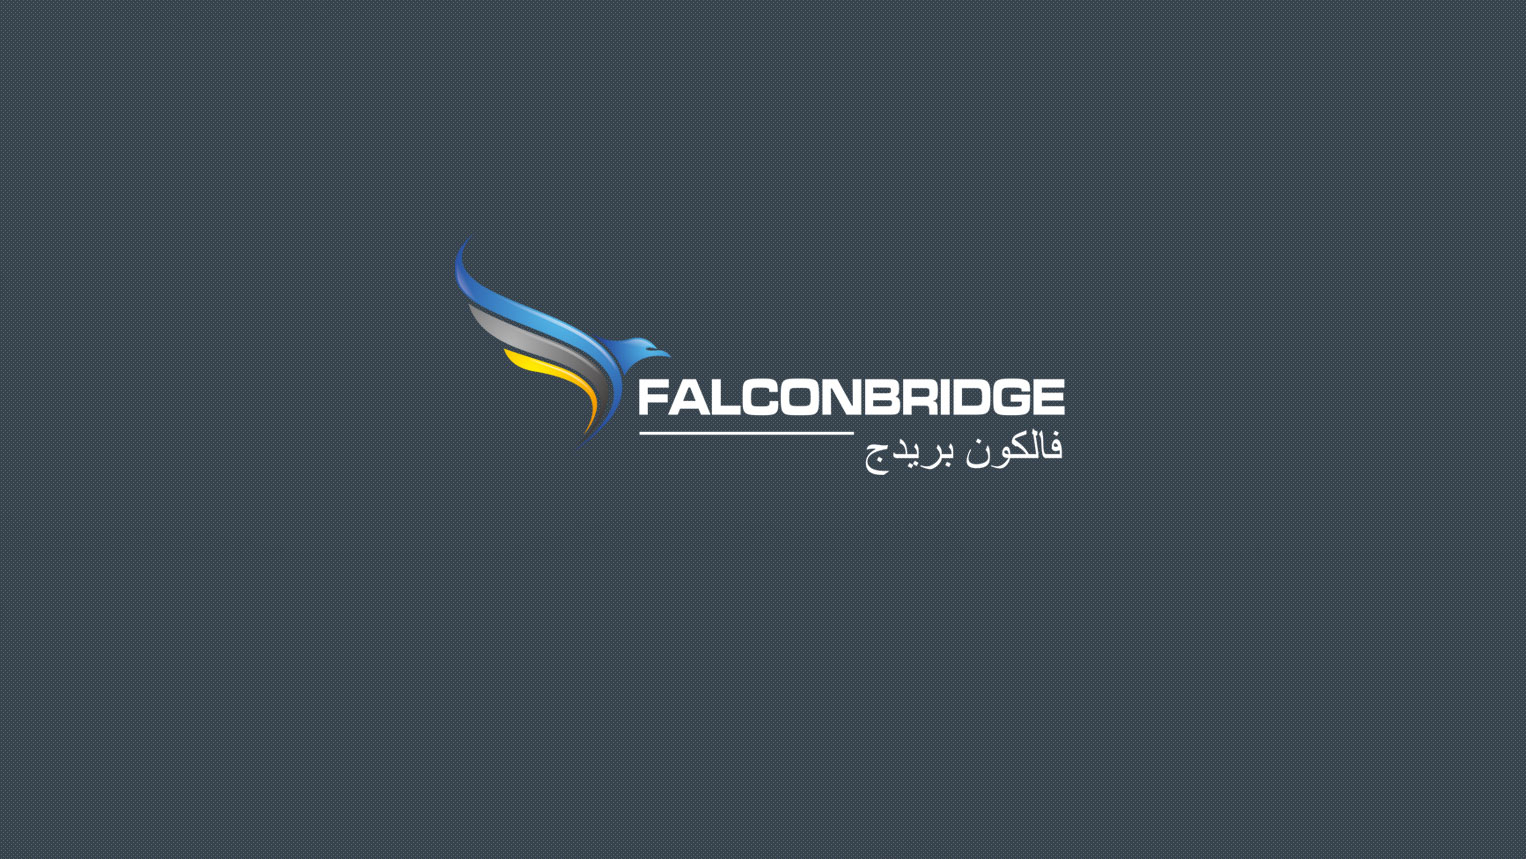 KOS Design - Falcon bridge